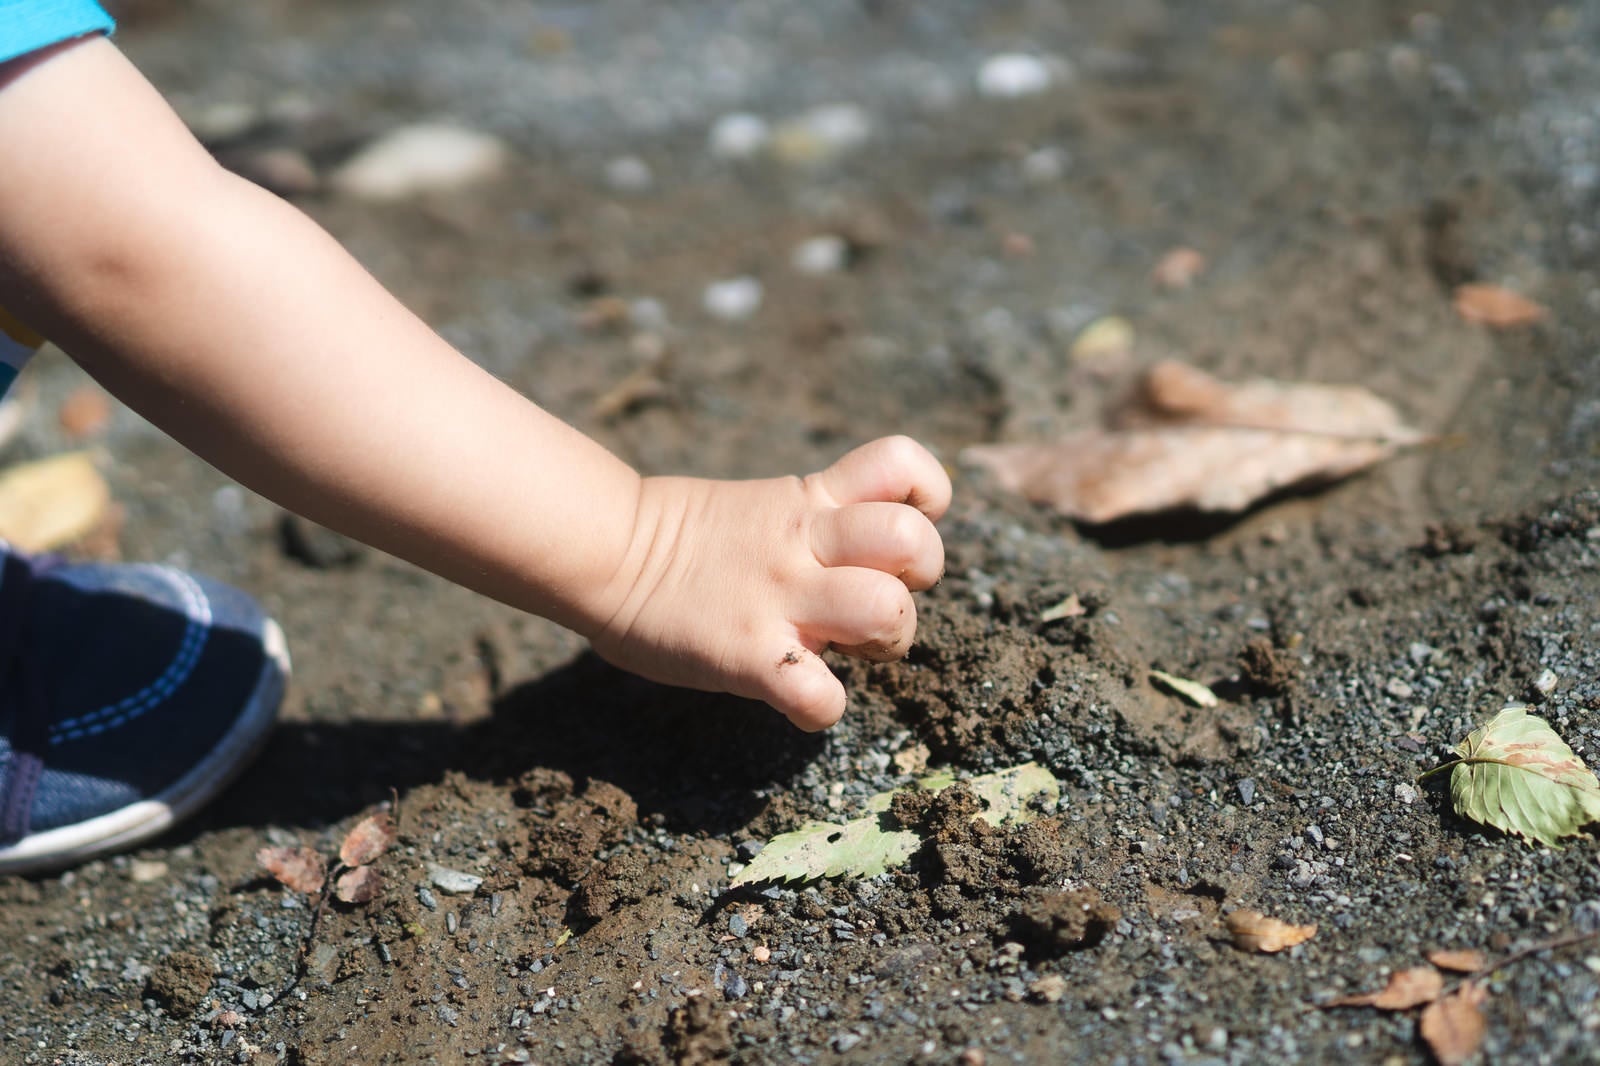 「素手で土を触る子供の手」の写真